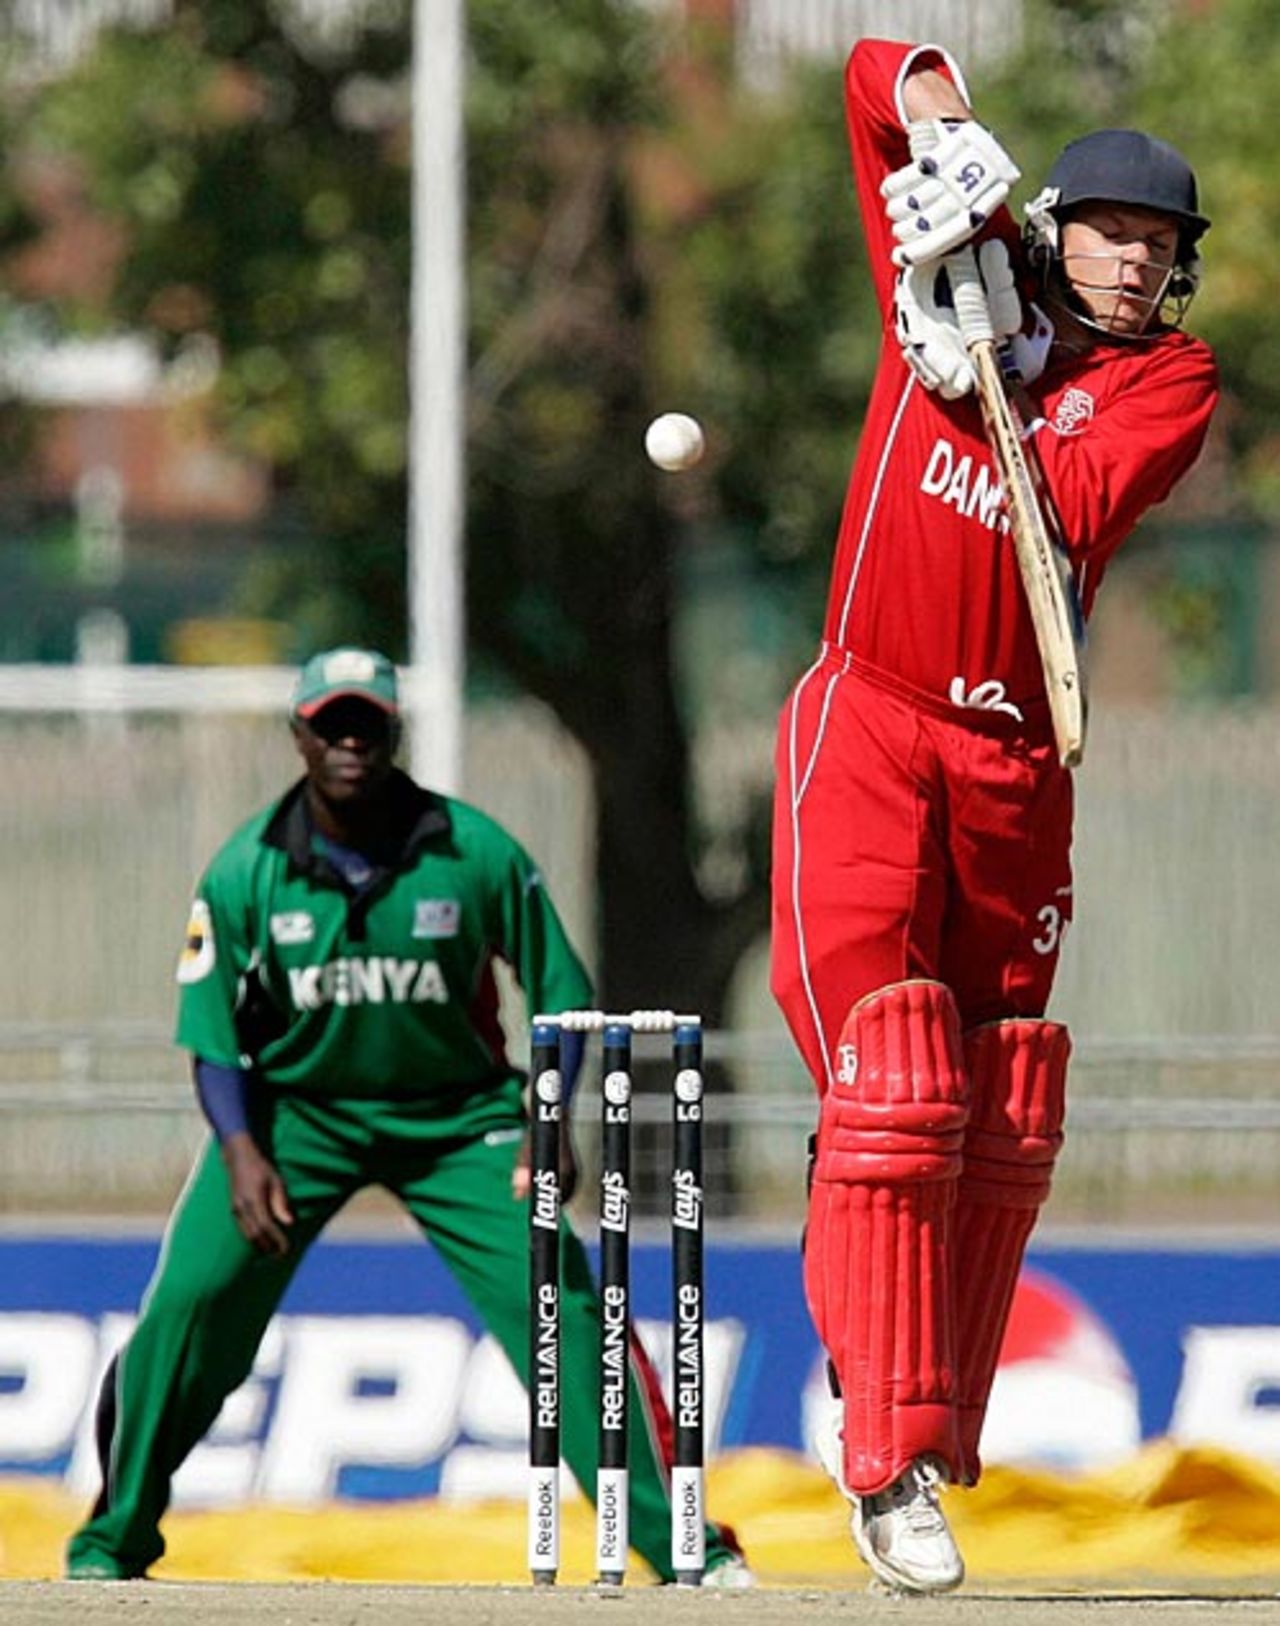 Freddie Klokker defends a short ball, Denmark v Kenya, World Cup Qualifiers, Potchefstroom, April 8, 2009